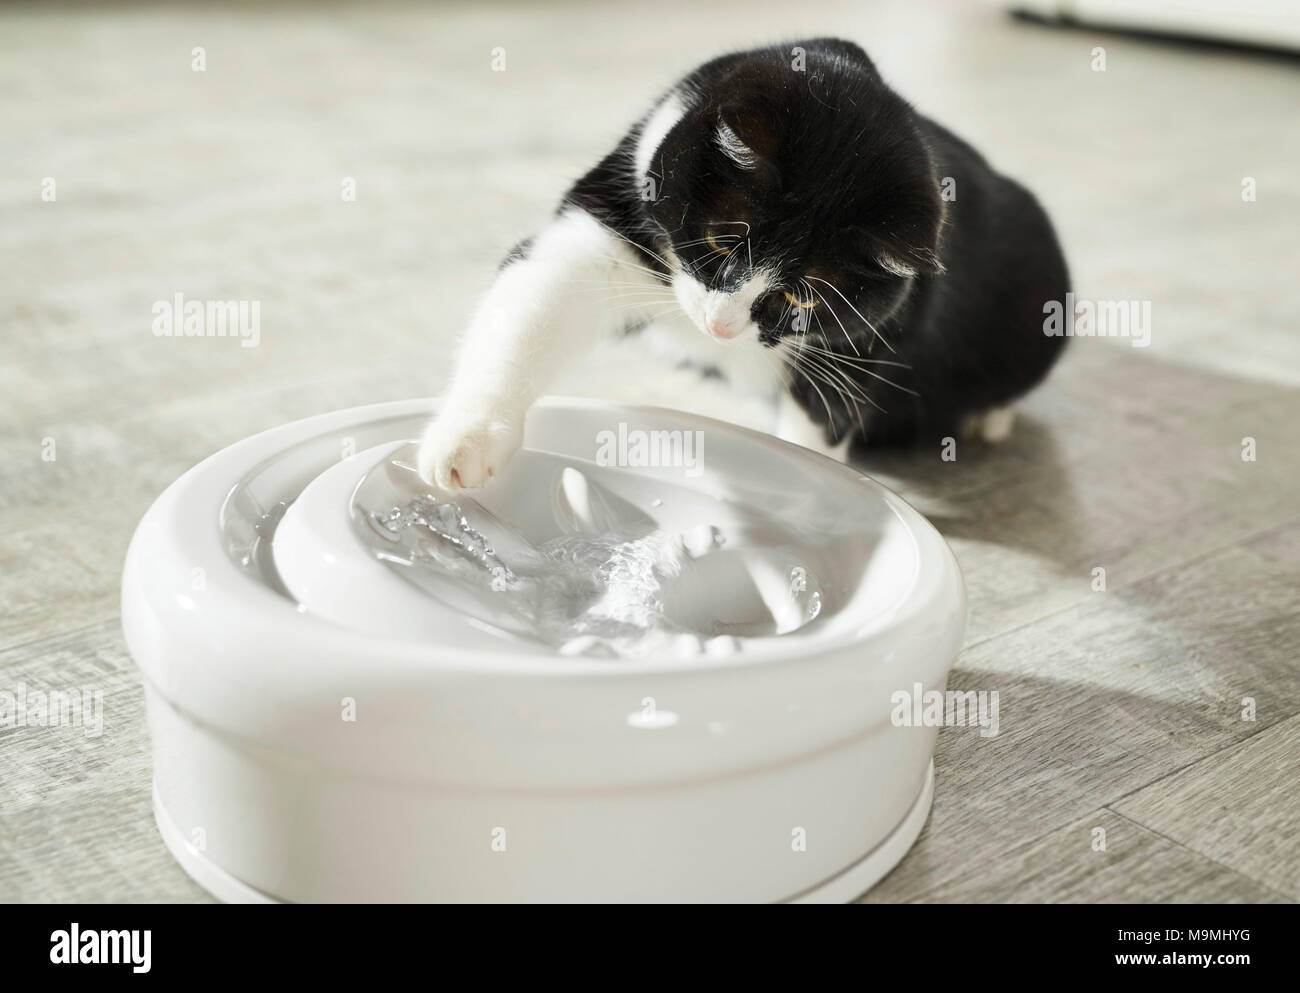 Gato doméstico. Gato adulto jugando con agua en una fuente interior. Alemania Foto de stock